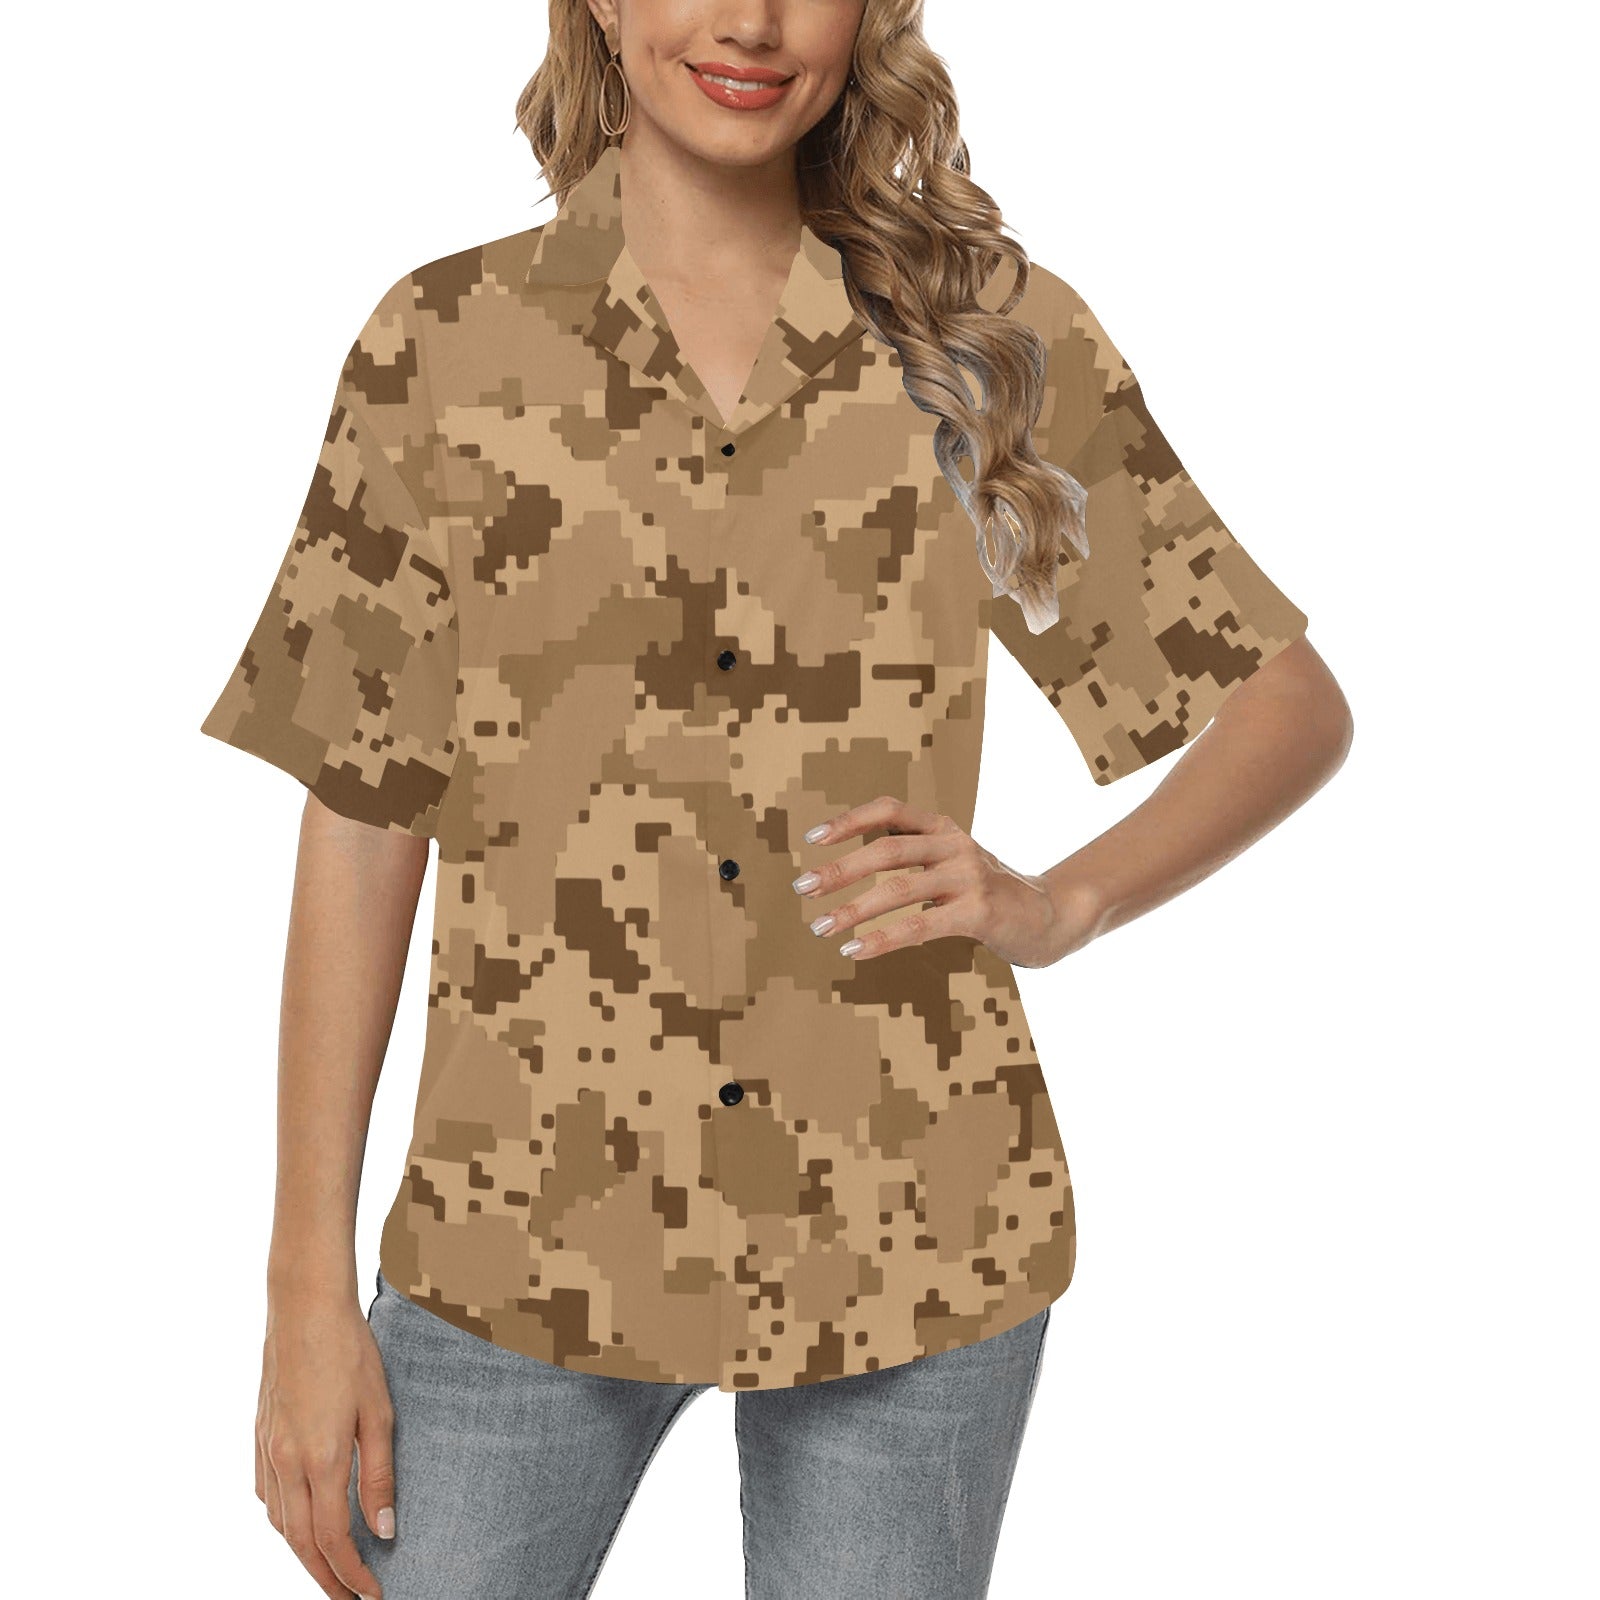 ACU Desert Digital Pattern Print Design 01 Women's Hawaiian Shirt